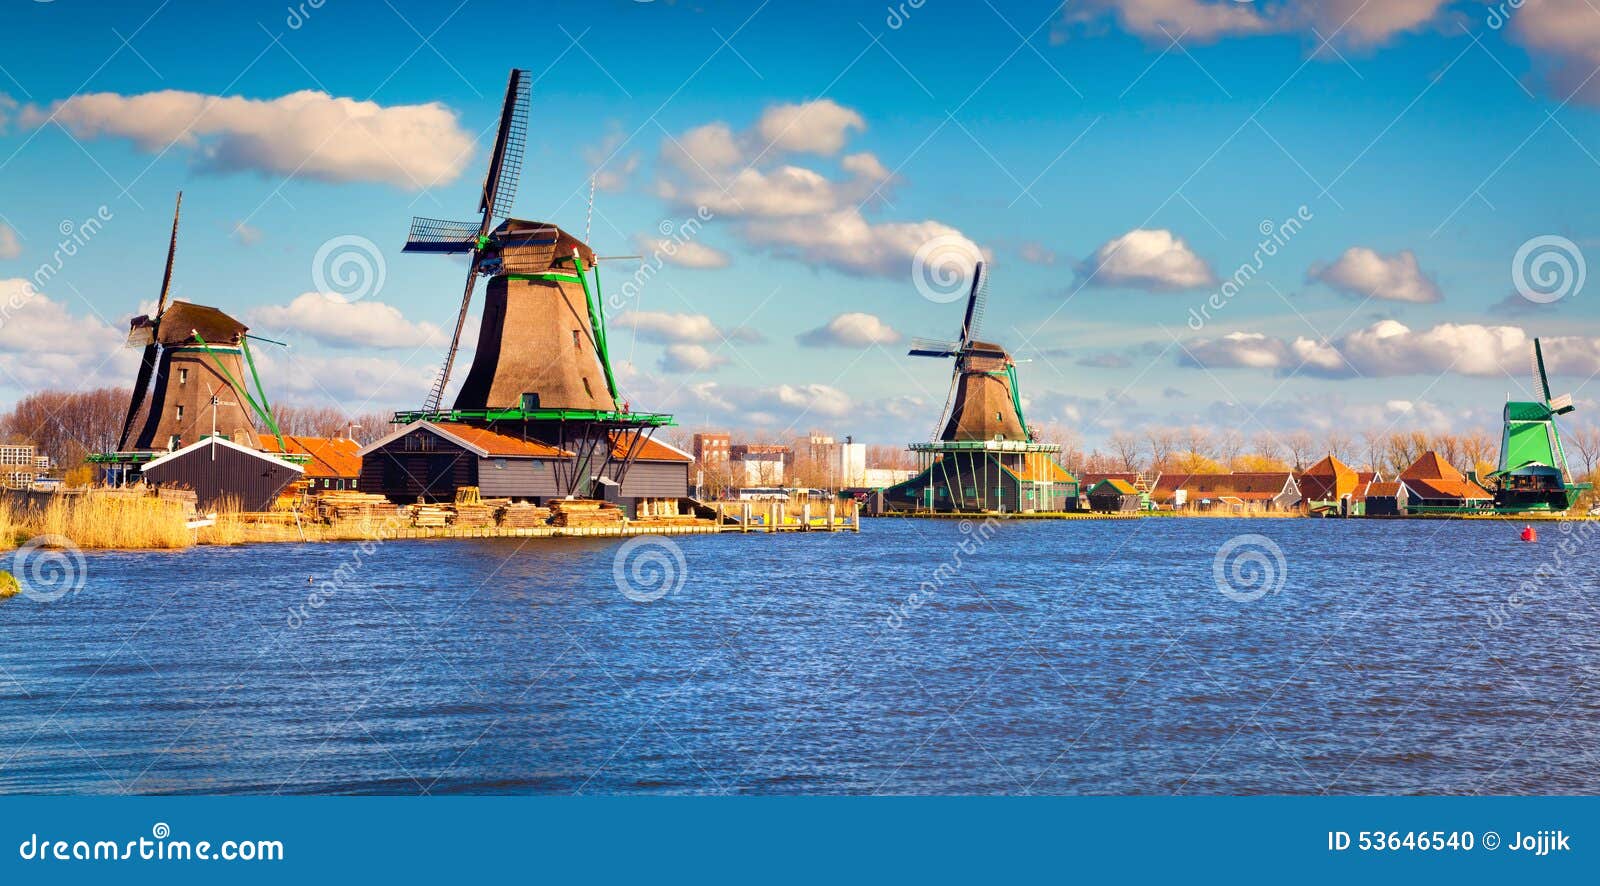 authentic zaandam mills on the water channel in zaanstad willage